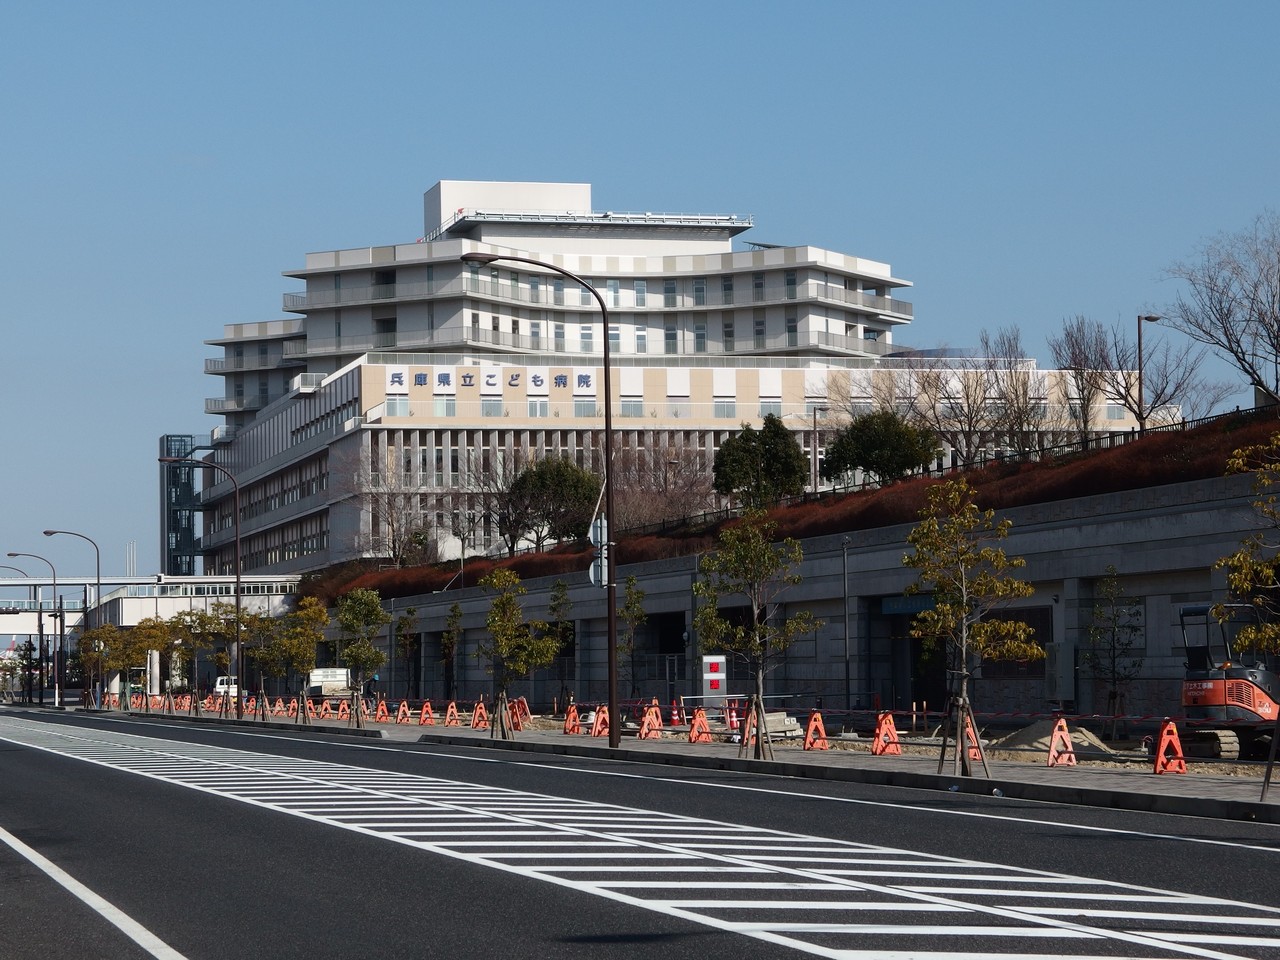 ポートアイランドにつくってた 兵庫県立こども病院 が完成したみたい 神戸ジャーナル